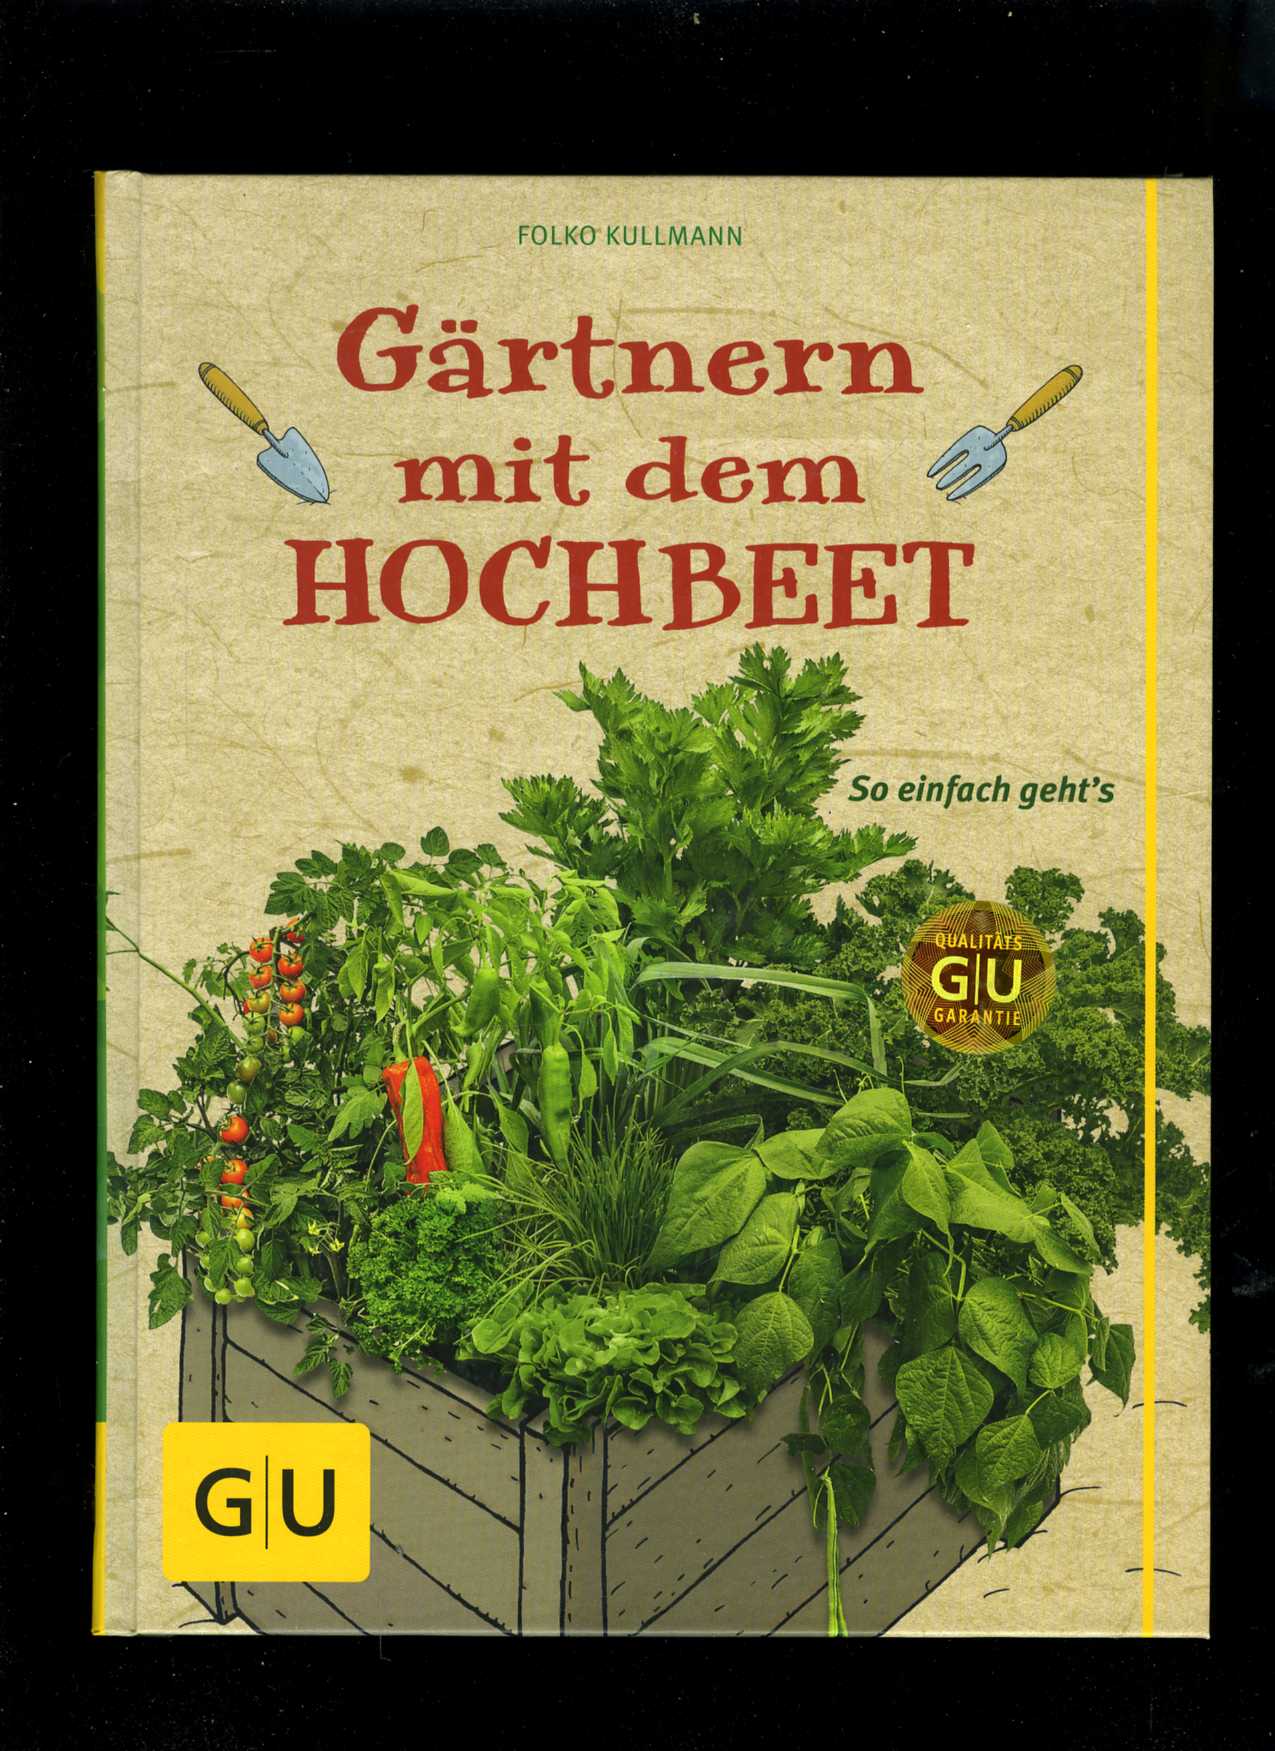 Gärtnern mit dem Hochbeet (Folko Kullmann)